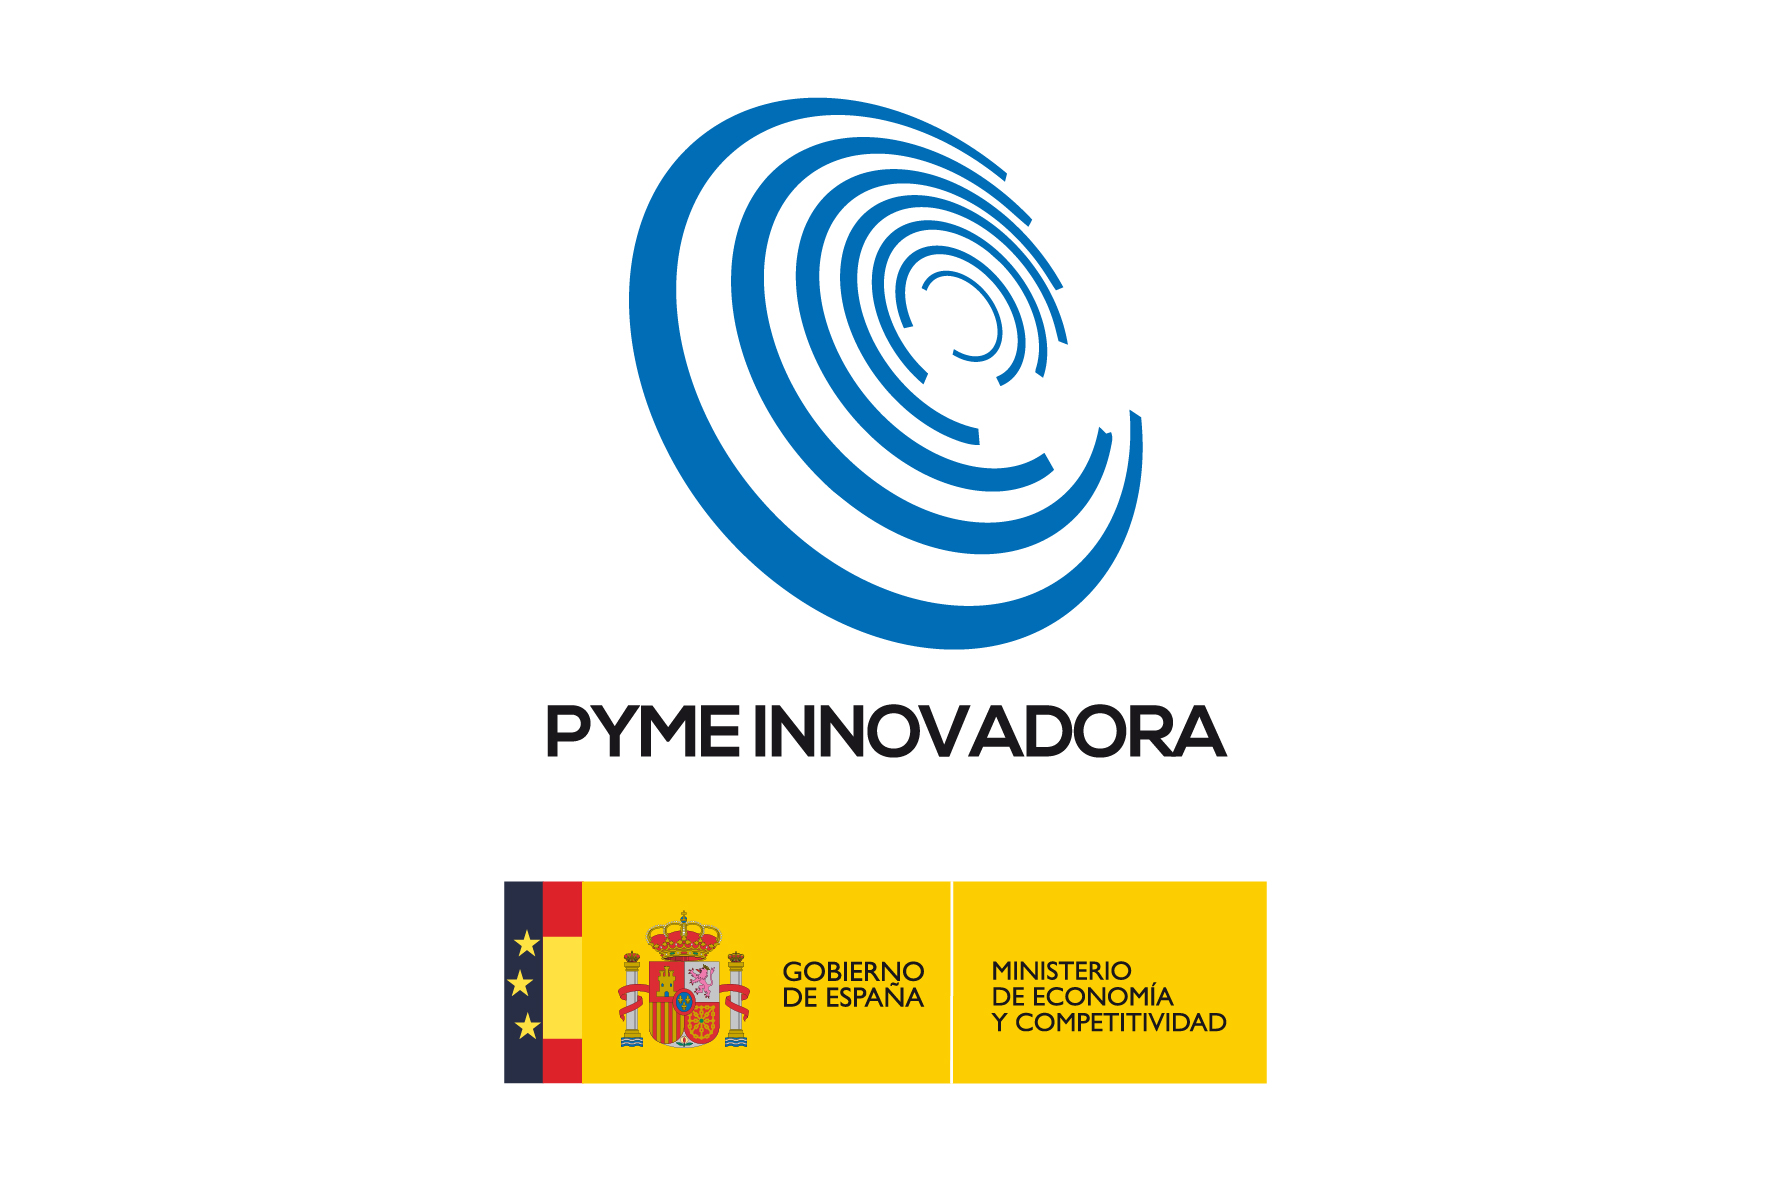 Pyme-Innovadora-15x10-cm